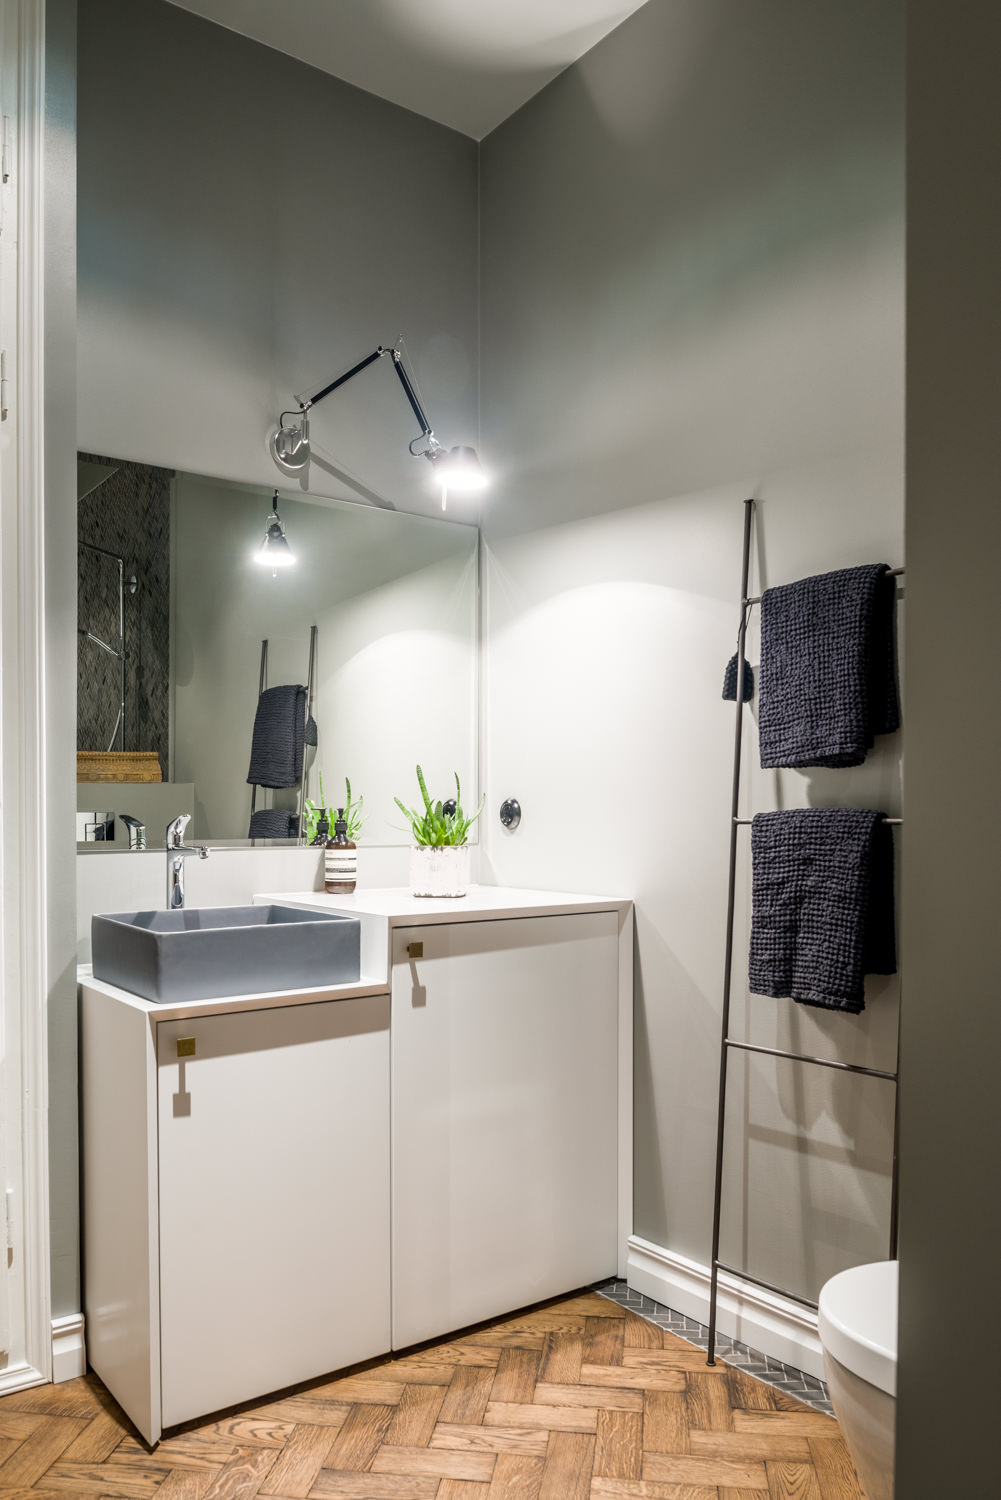 Stauraumideen für kleine Räume: Küche, Bad & Flur